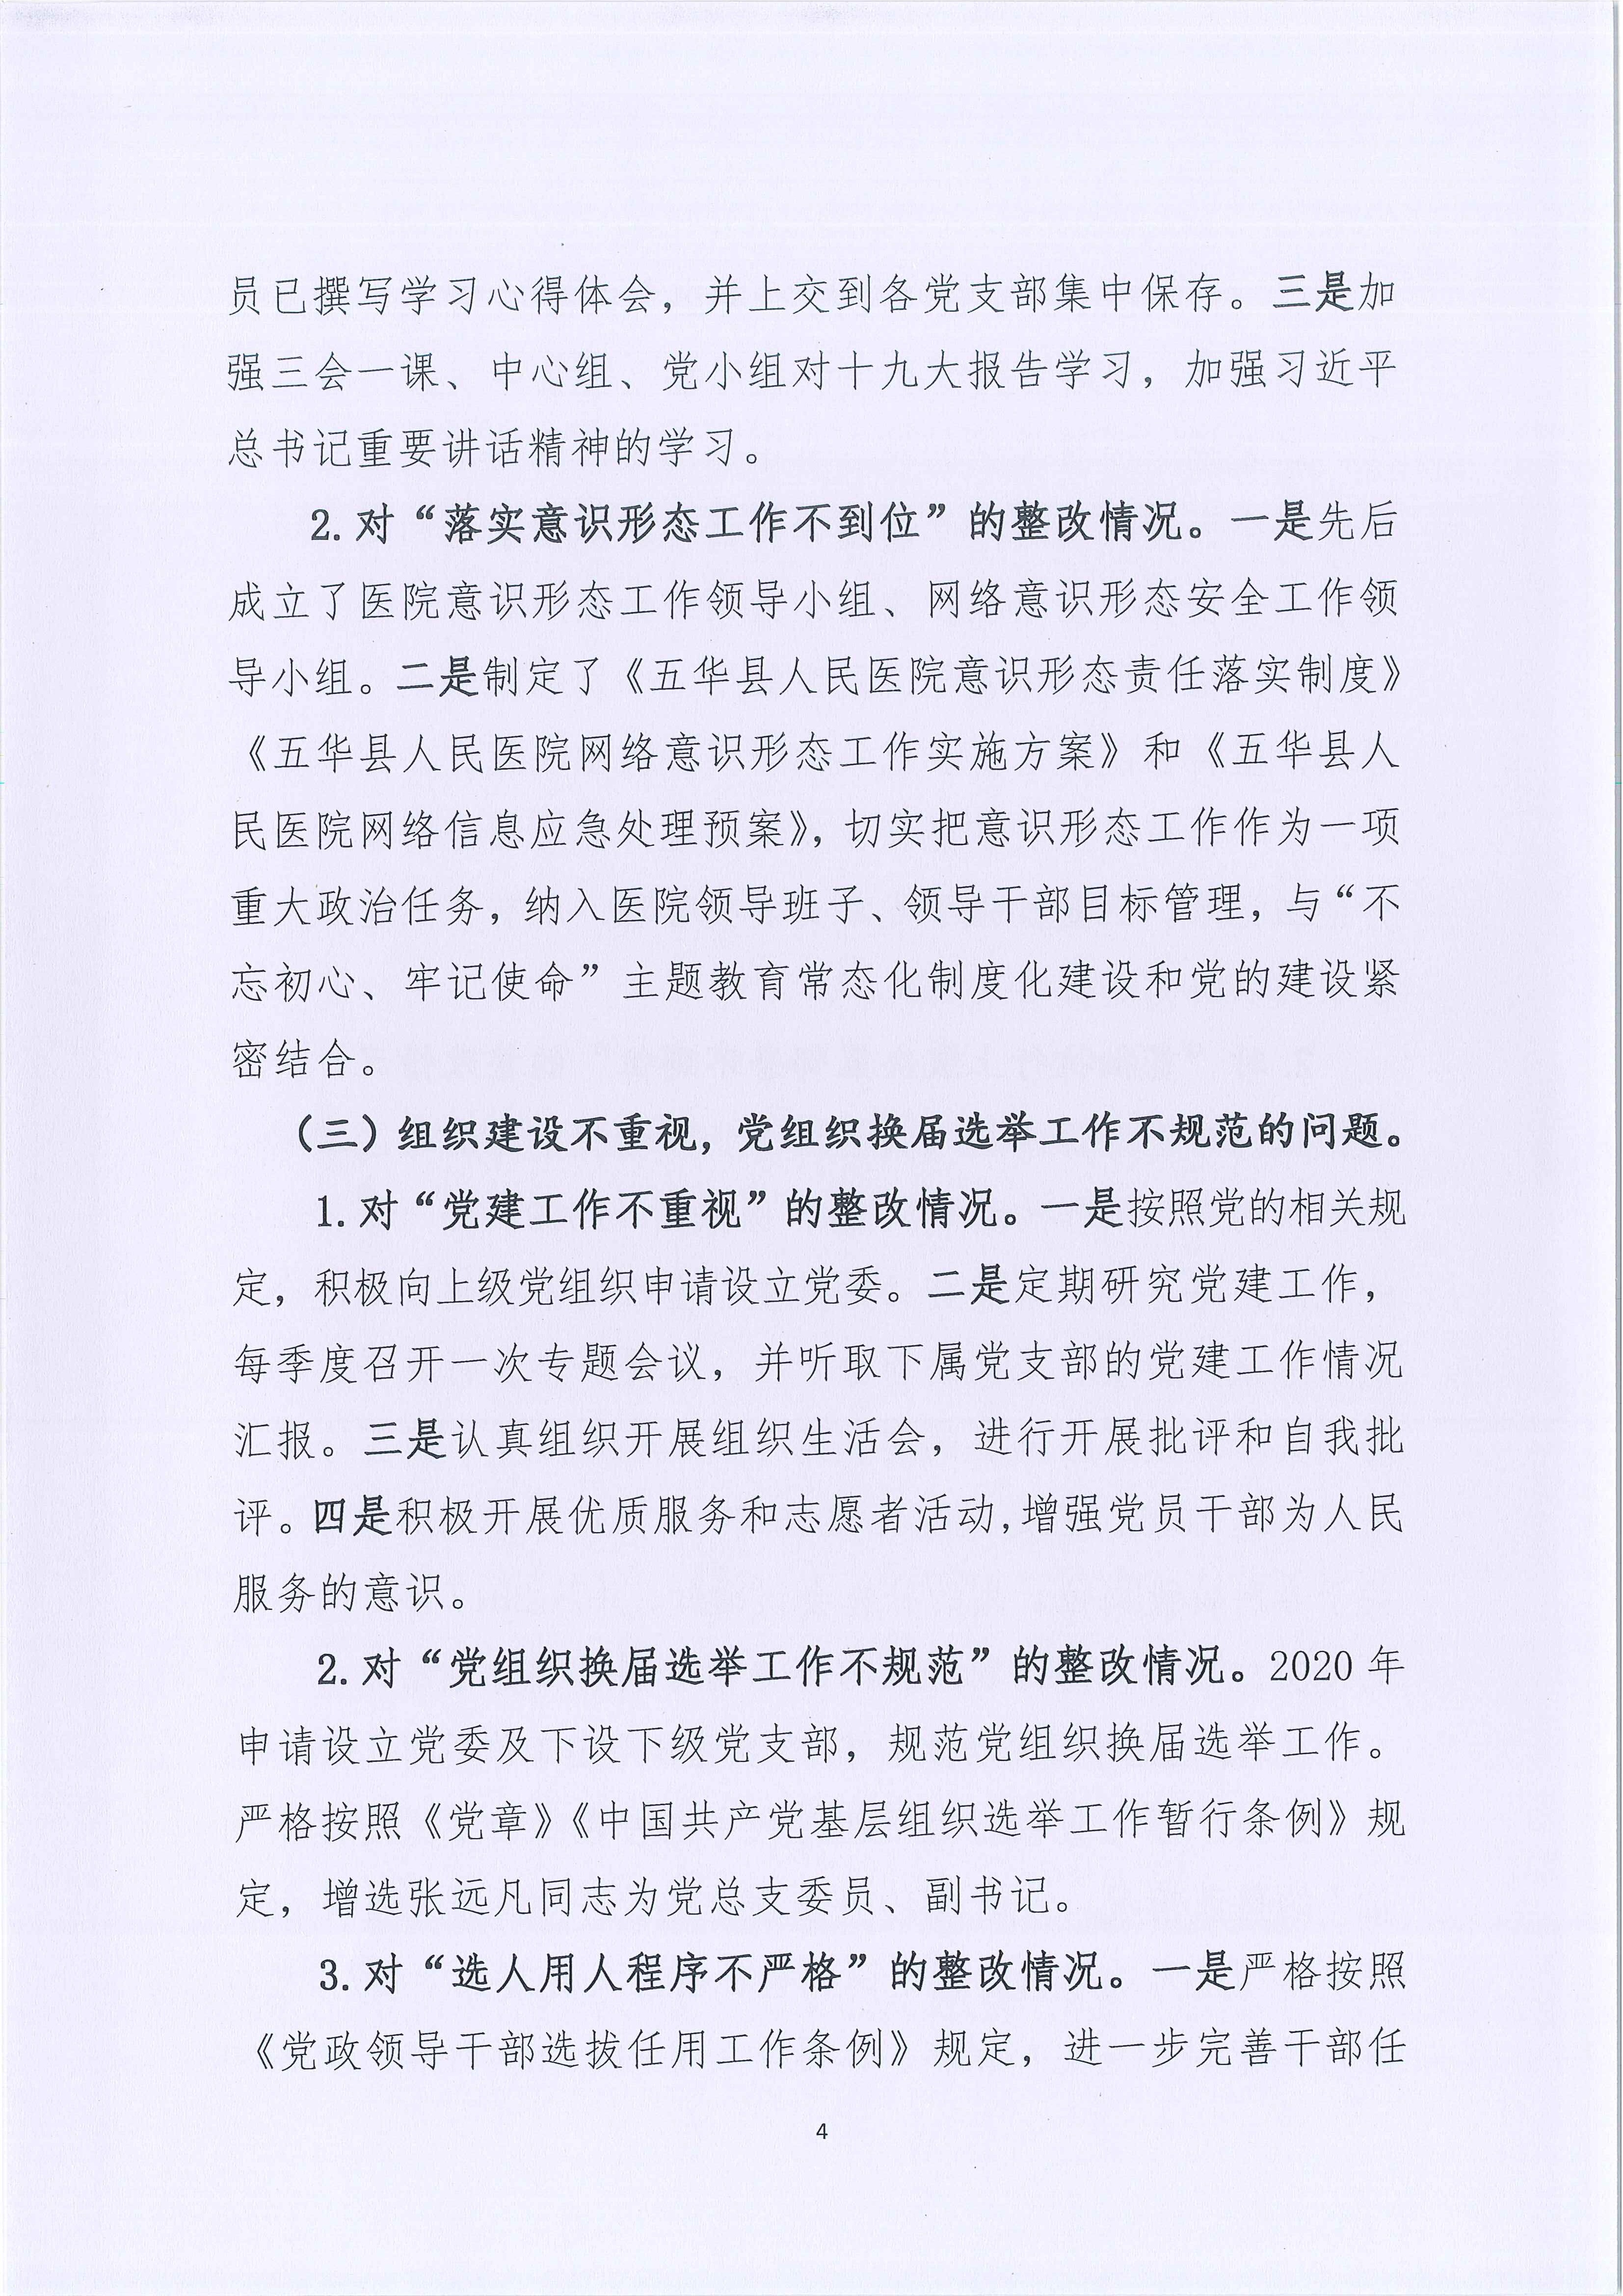 五华县人民医院关于巡察整改进展情况的通报_4